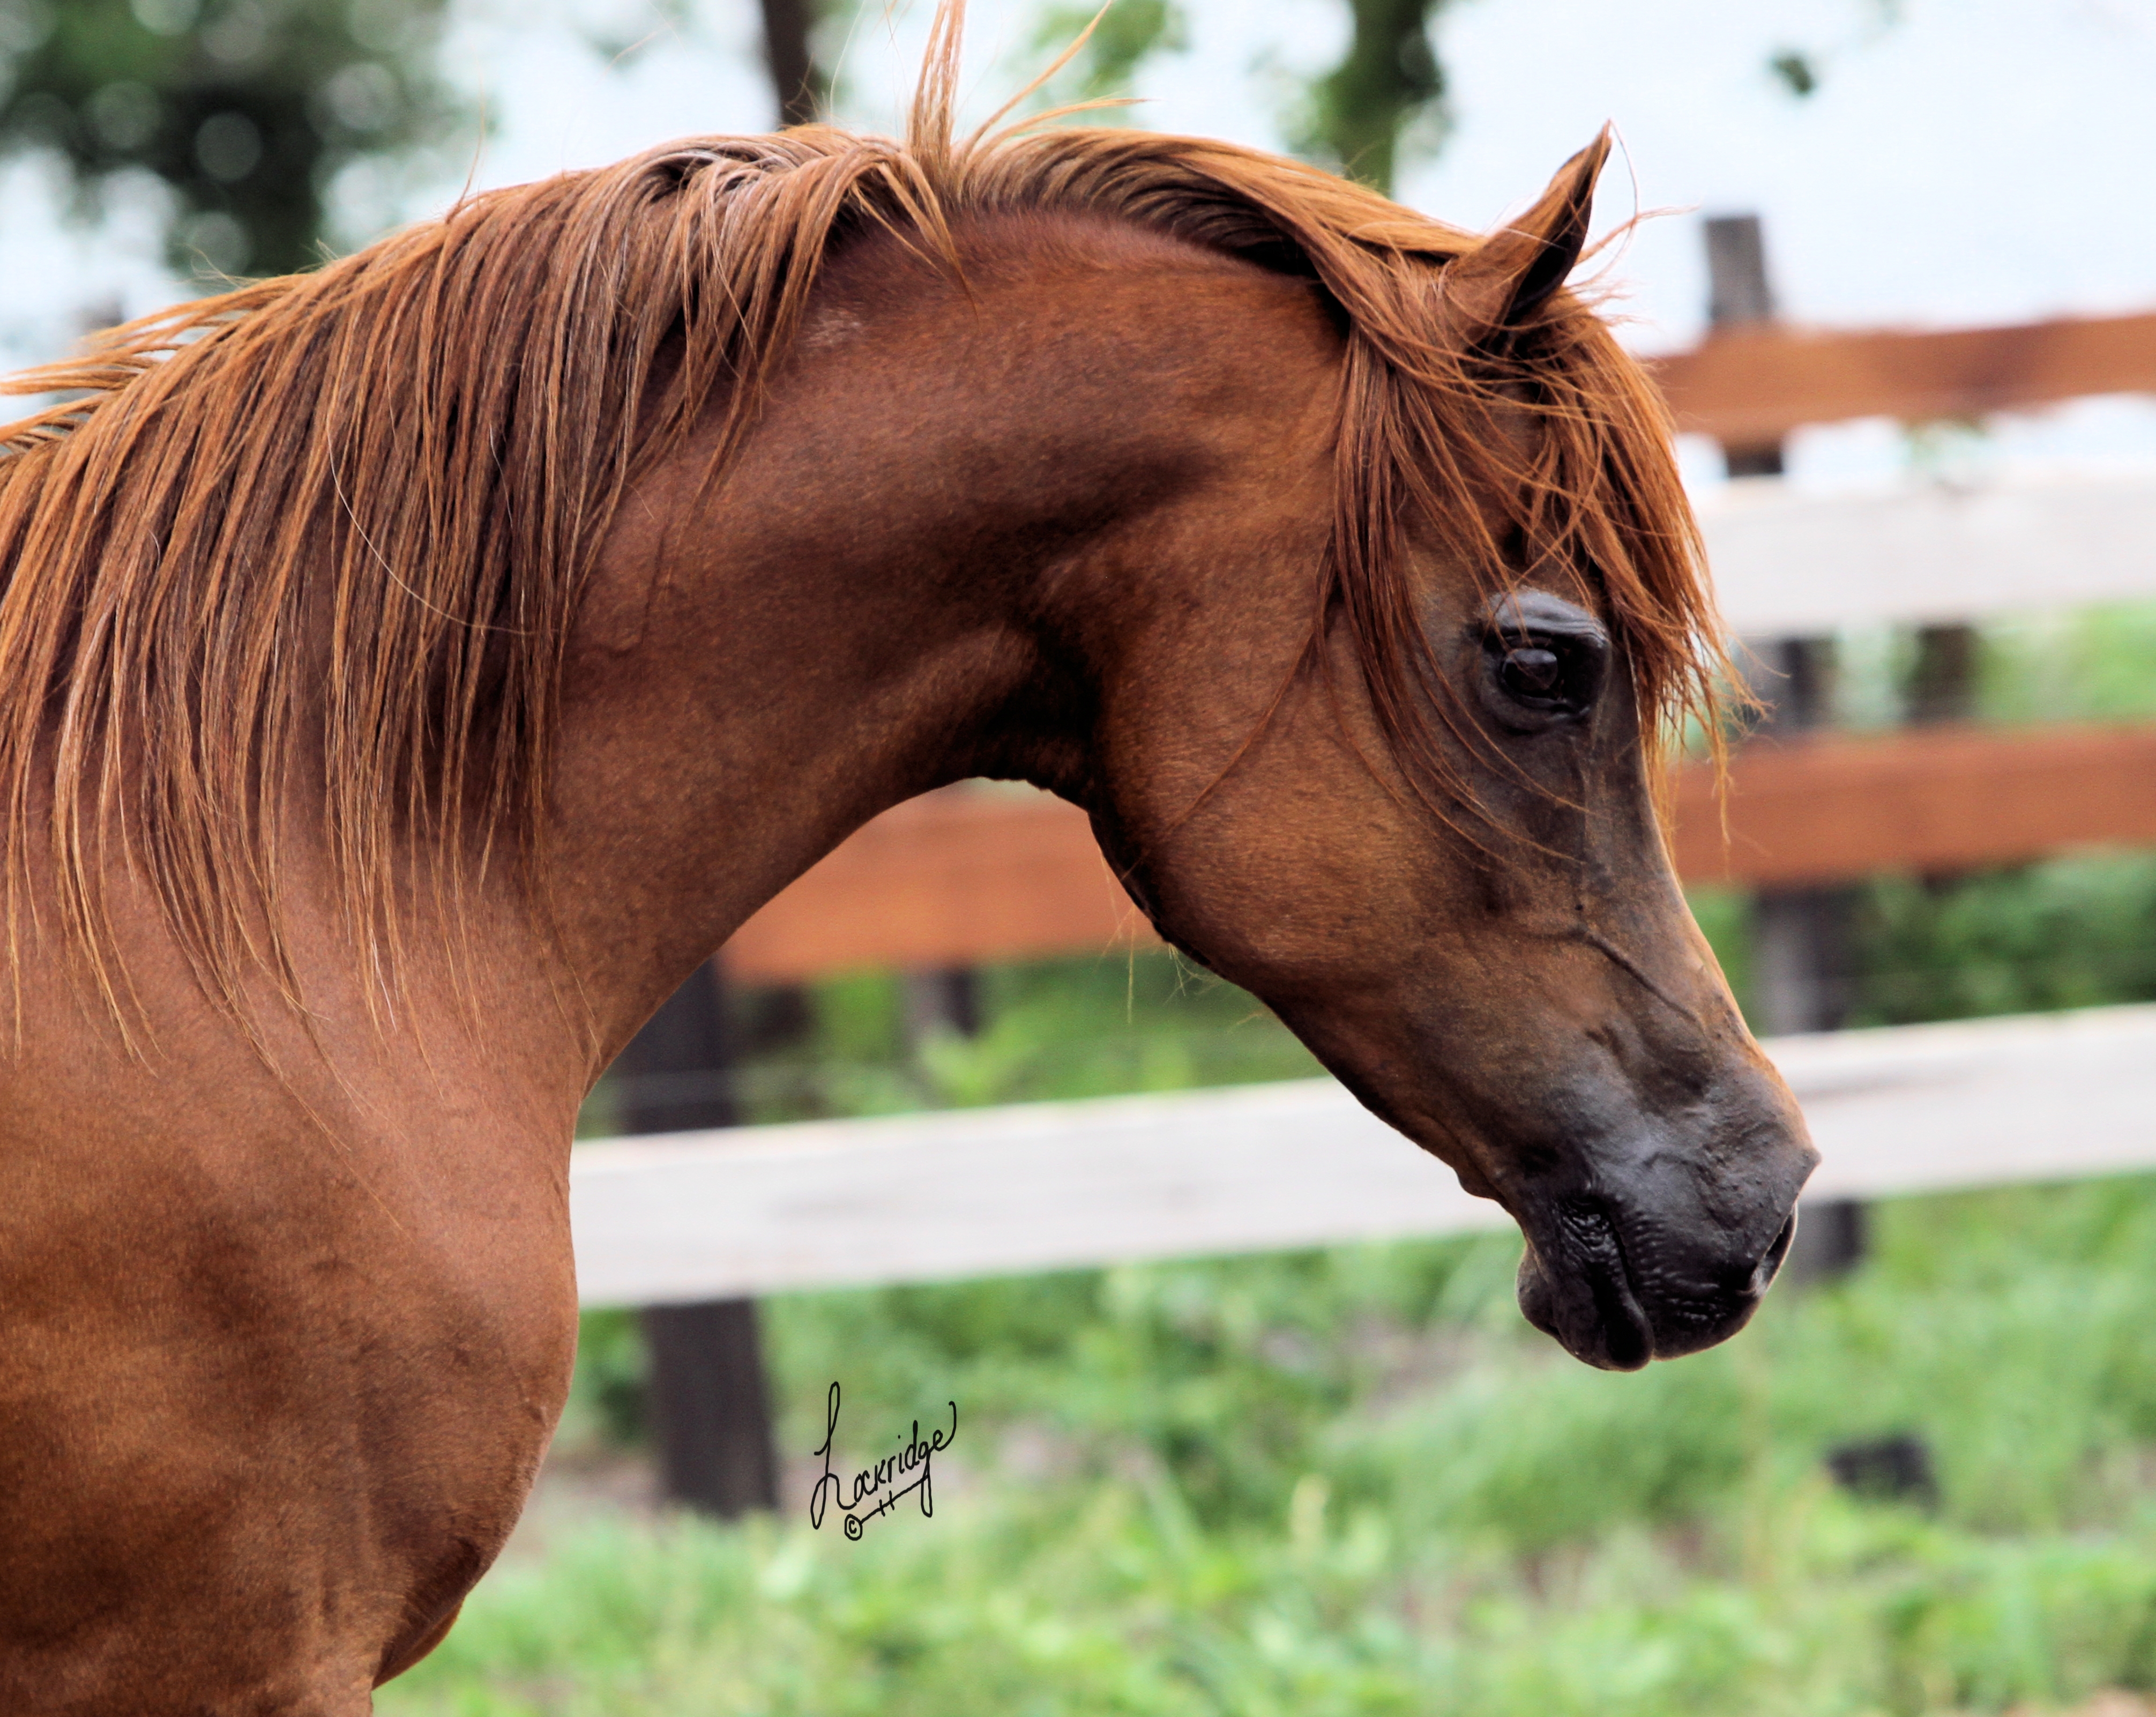 Арабская лошадь. Лошадь м. Красивый коричневый конь породистый. Арабская лошадь фото.